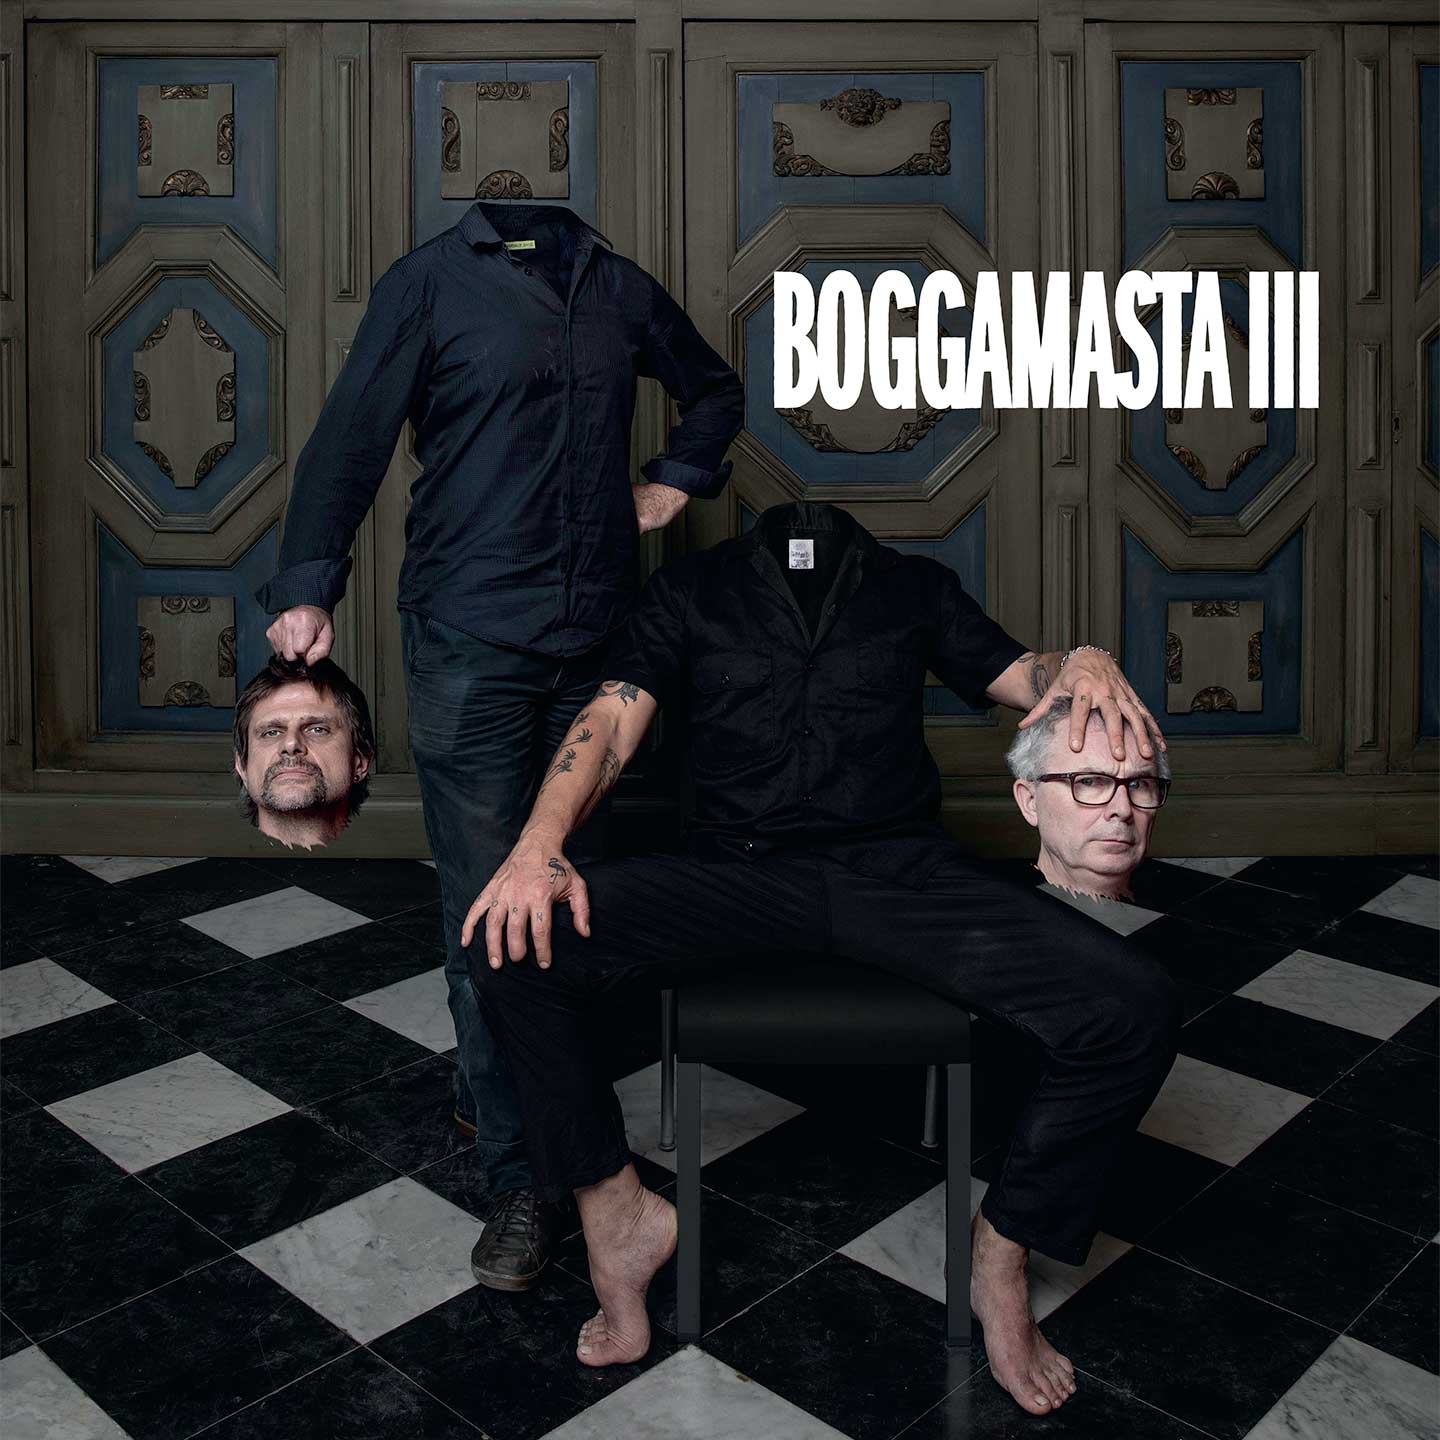 FLAT EARTH SOCIETY - Boggamasta III cover 